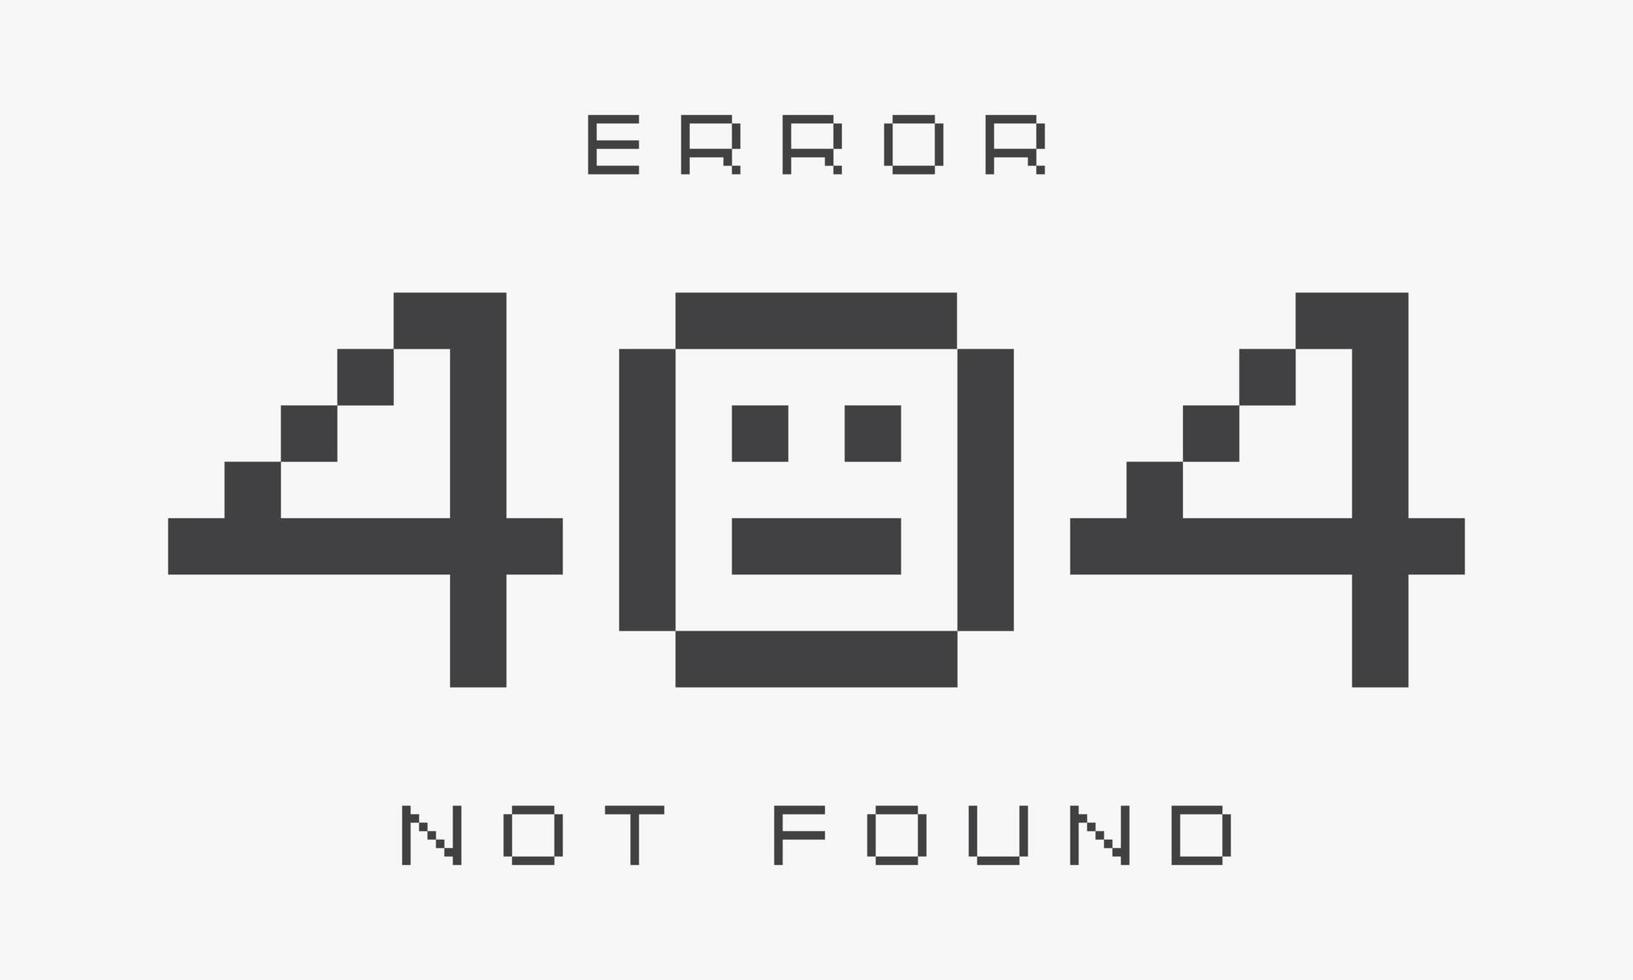 error 404 not found text design vector. vector